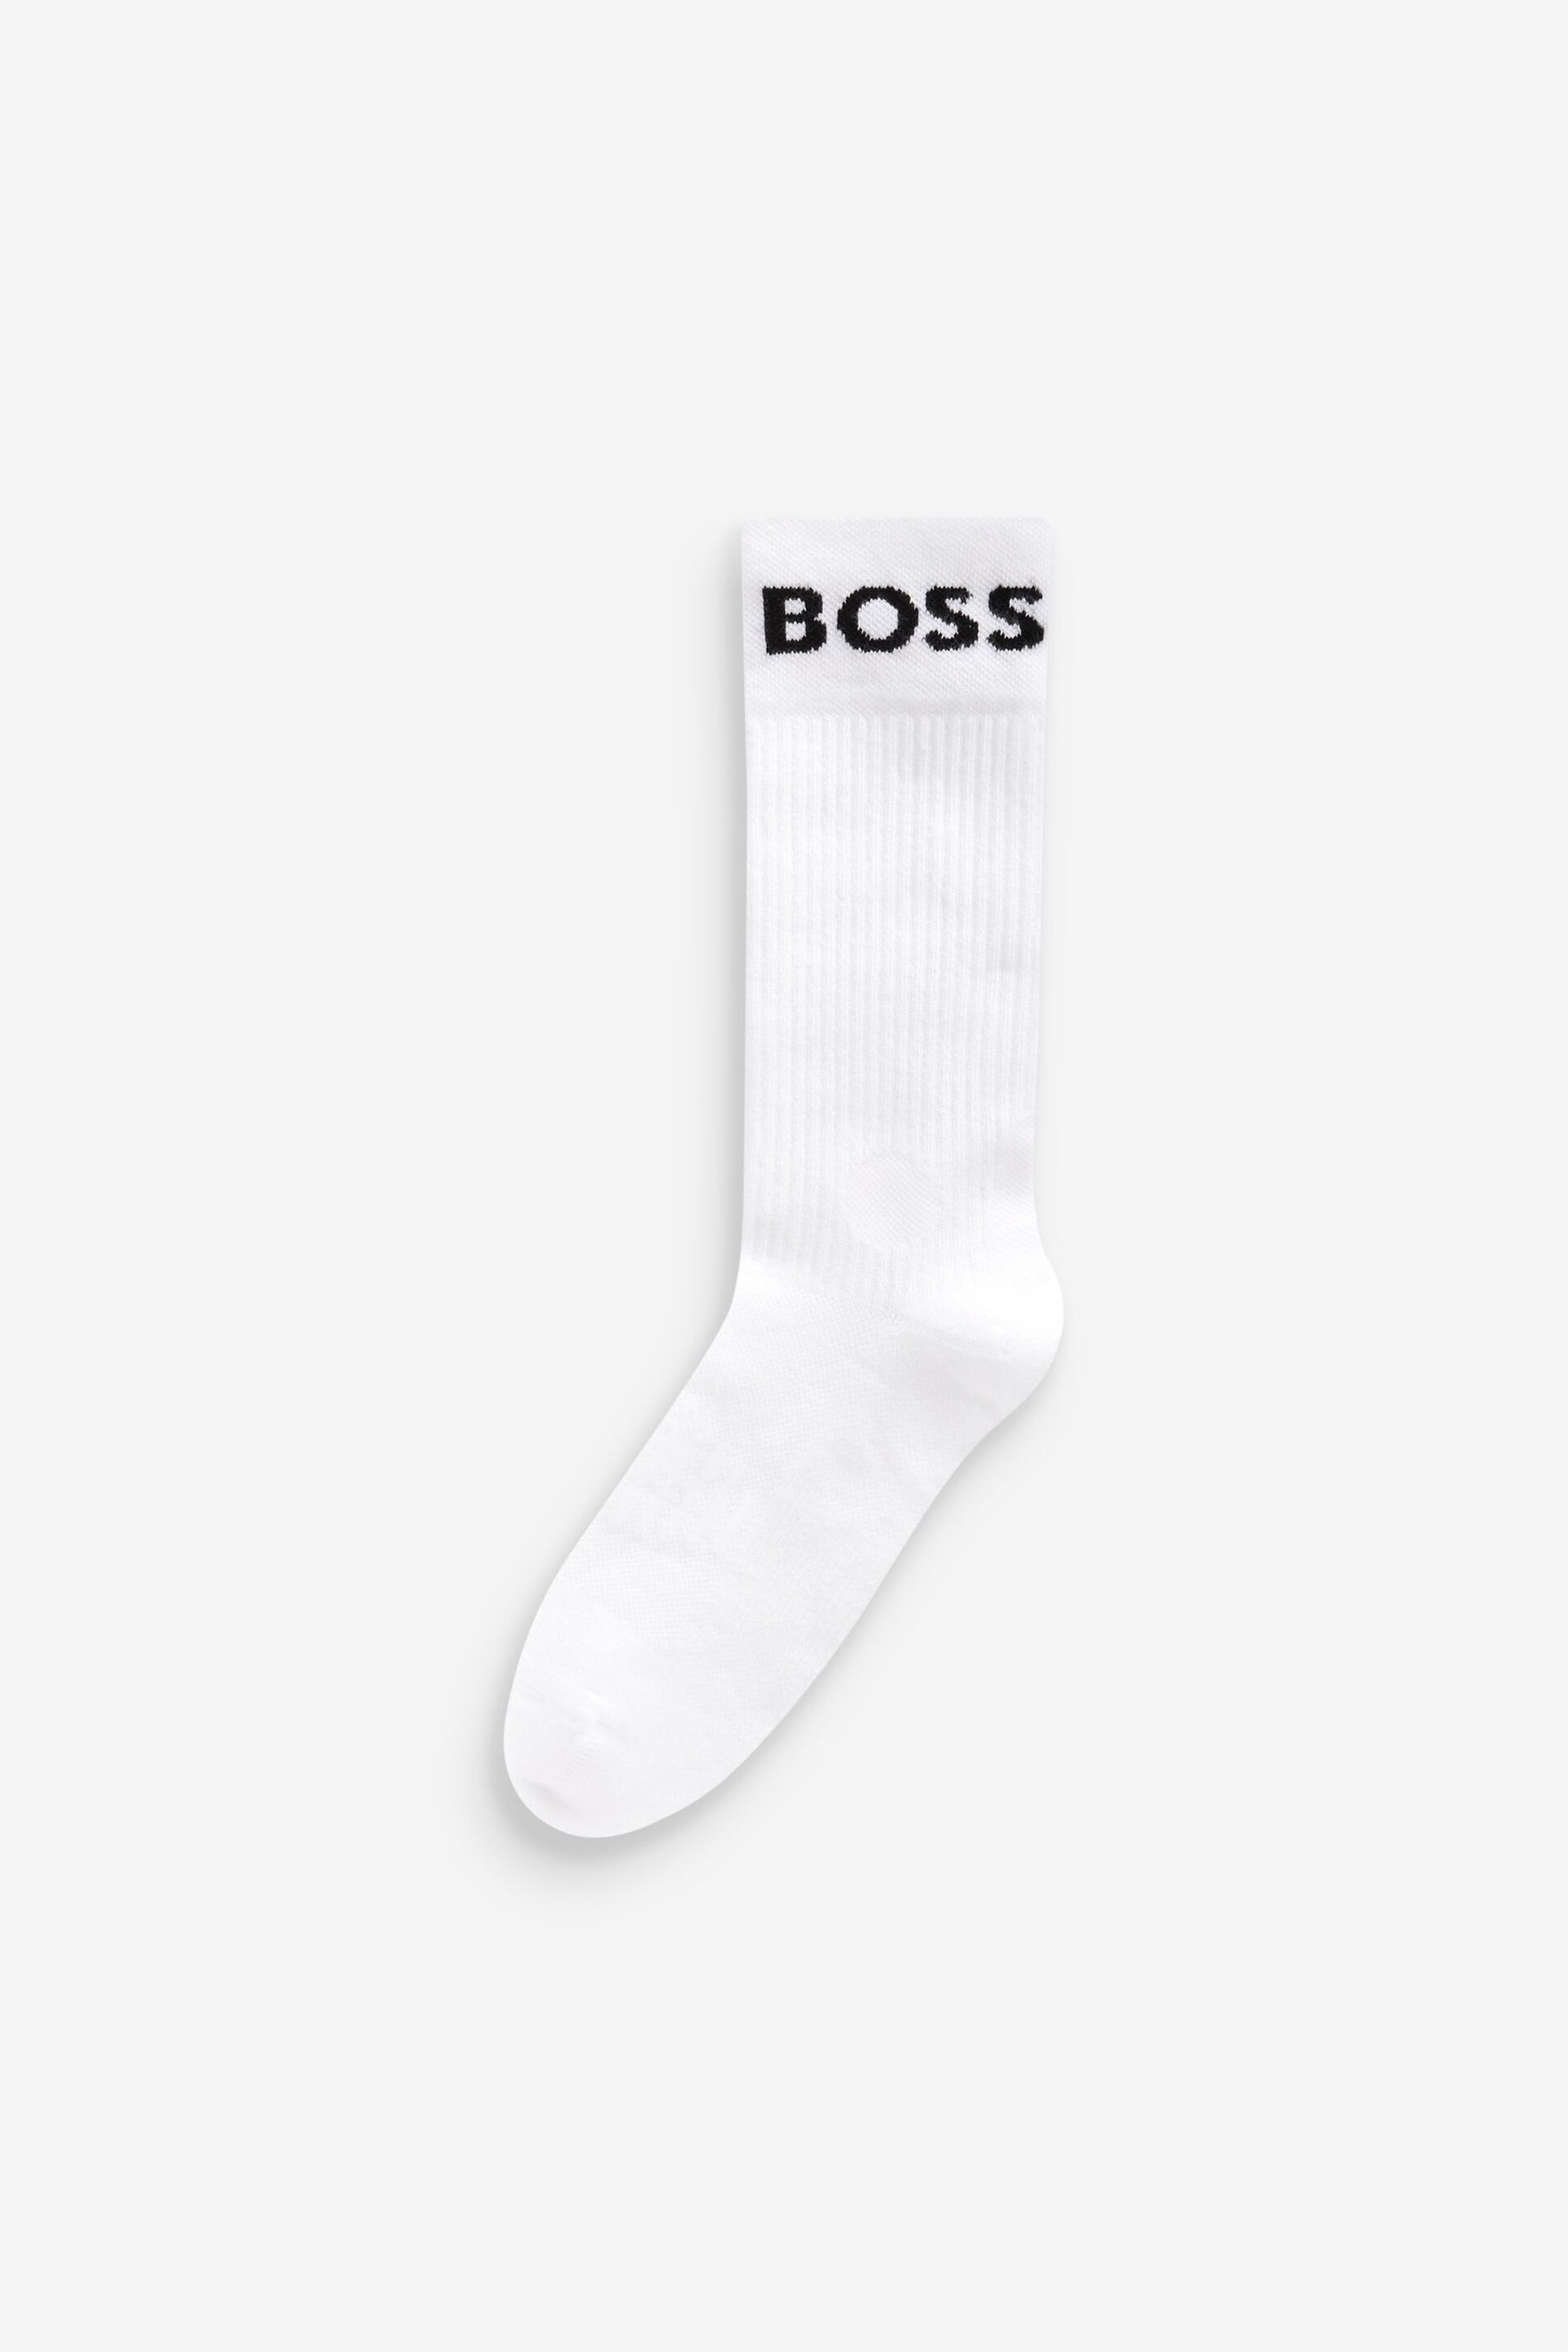 BOSS White Sport Socks 2 Pack - Image 3 of 5